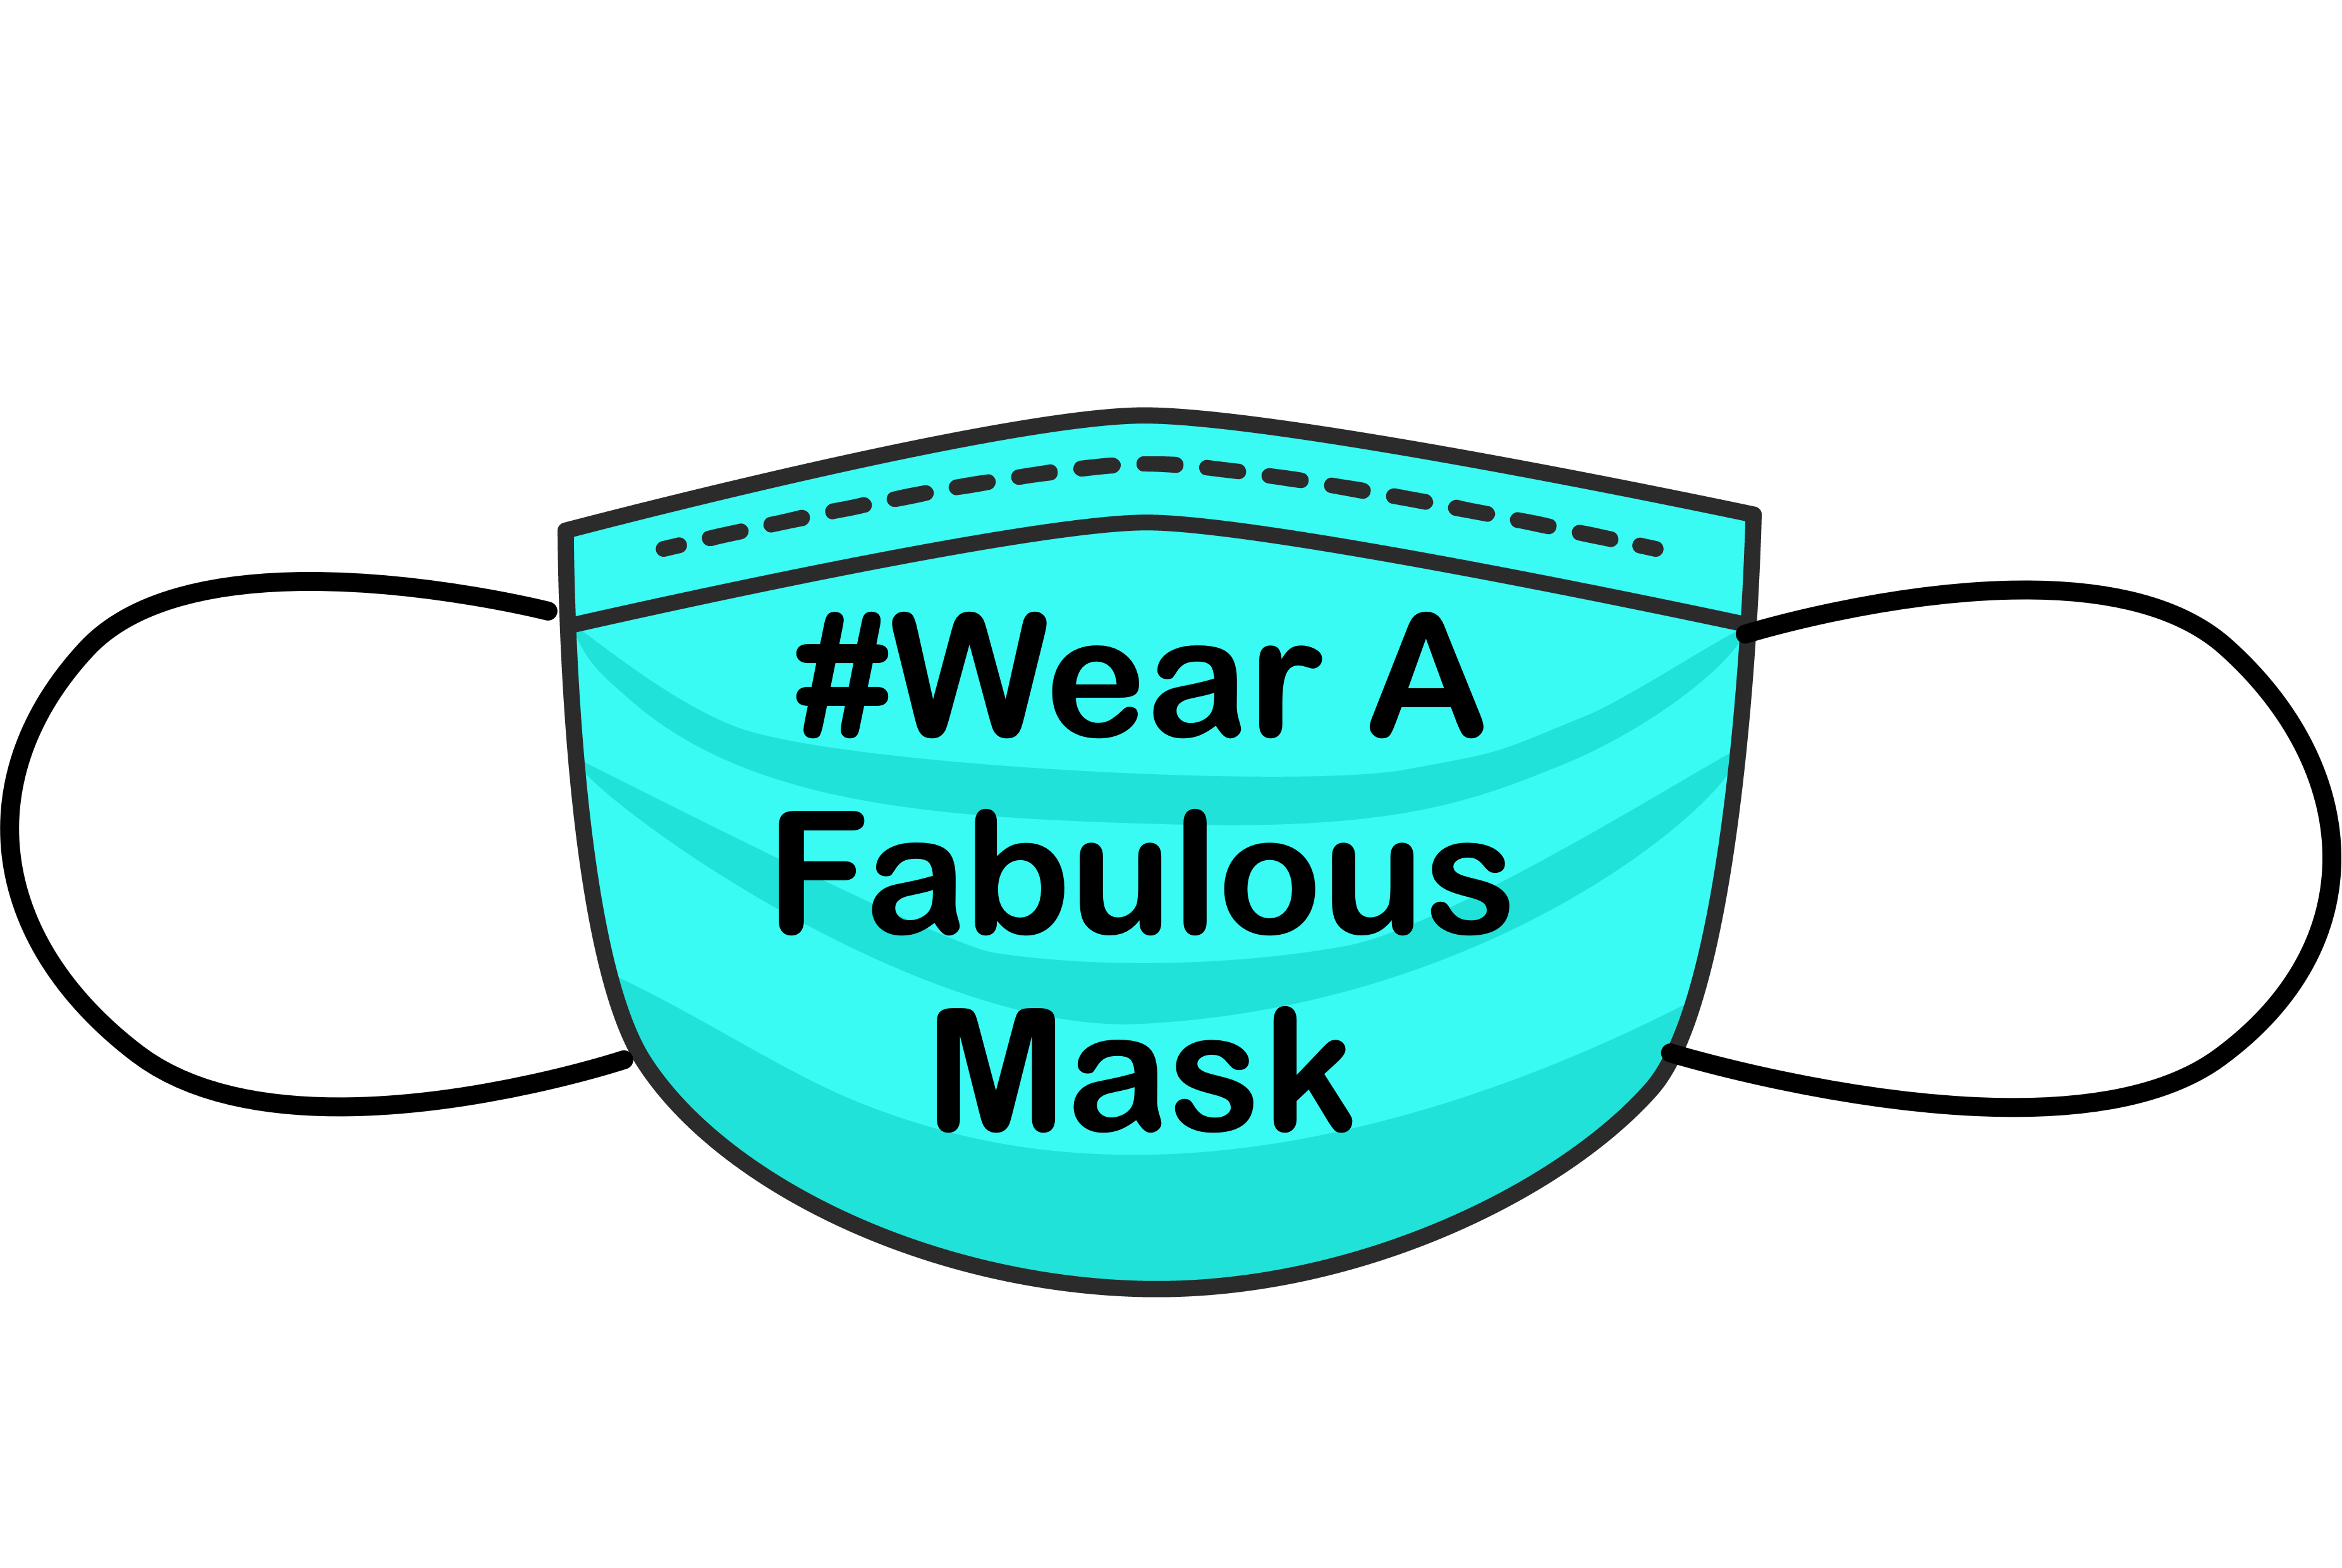 A Fabulous Mask